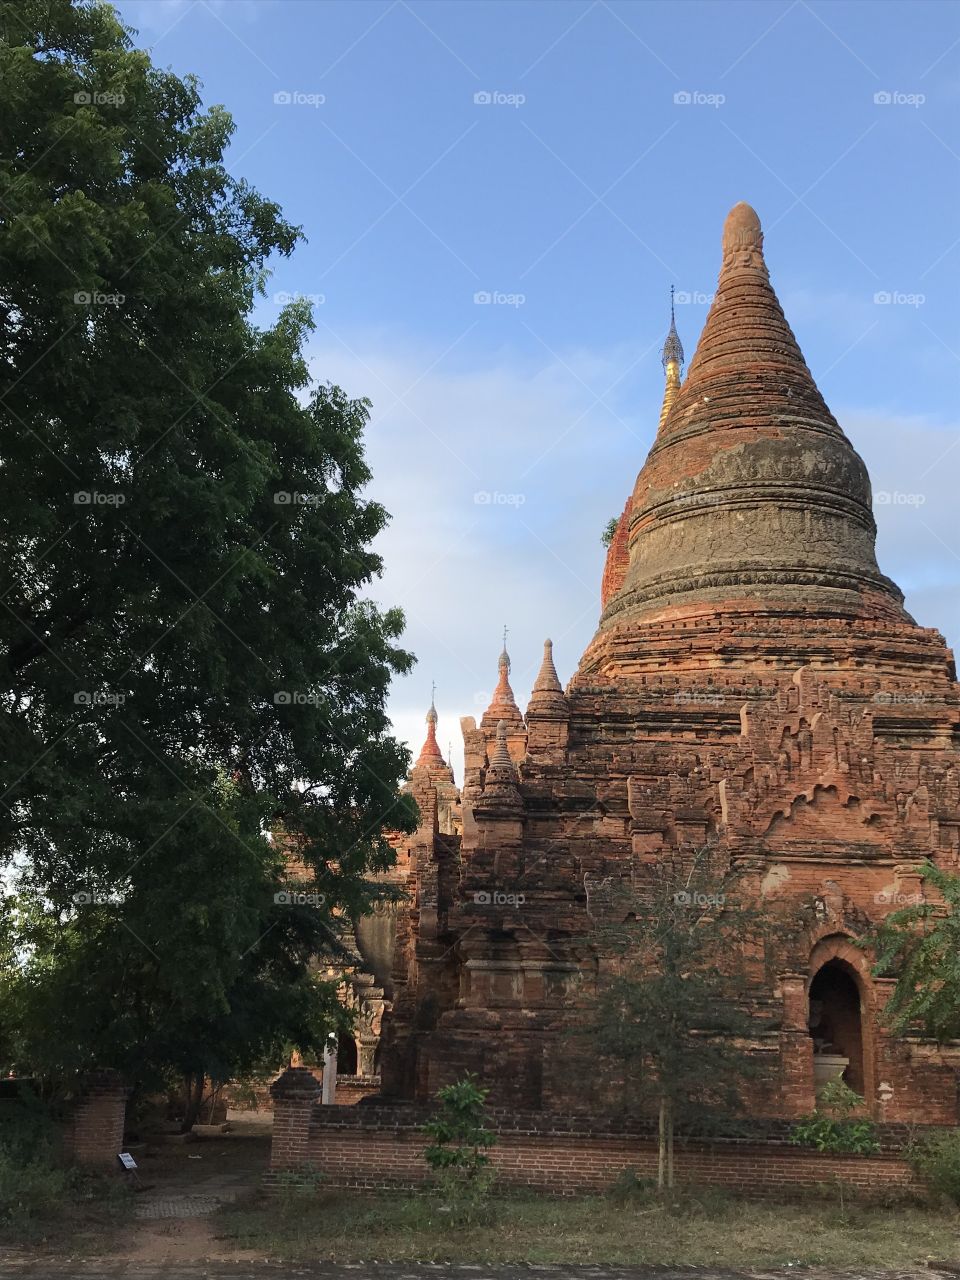 Bagan temple 2